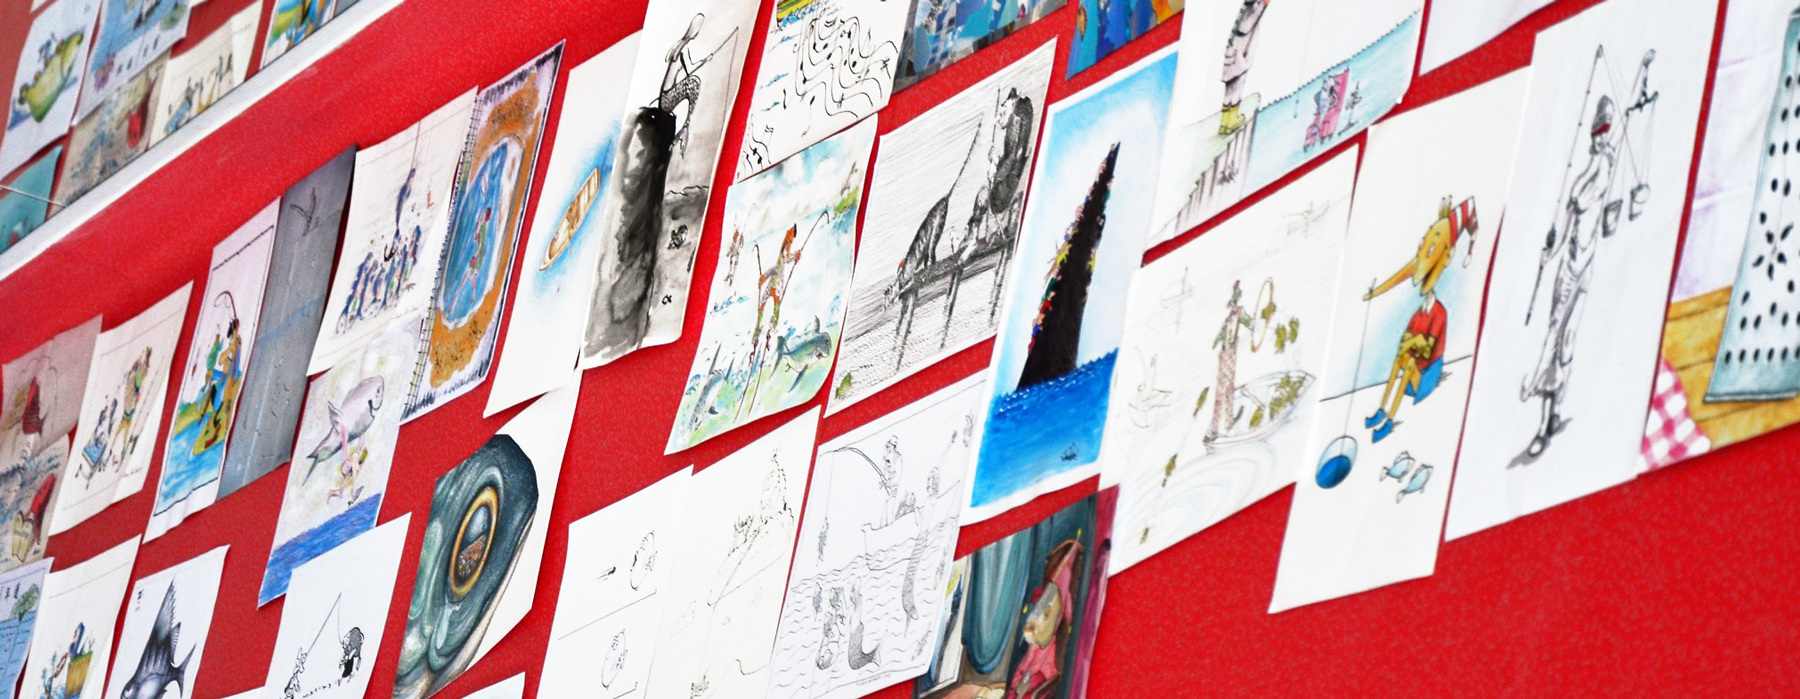 Wystawa rysunków nadesłanych na XVI Międzynarodowy Konkurs Rysunku Satyrycznego KARPIK 2018